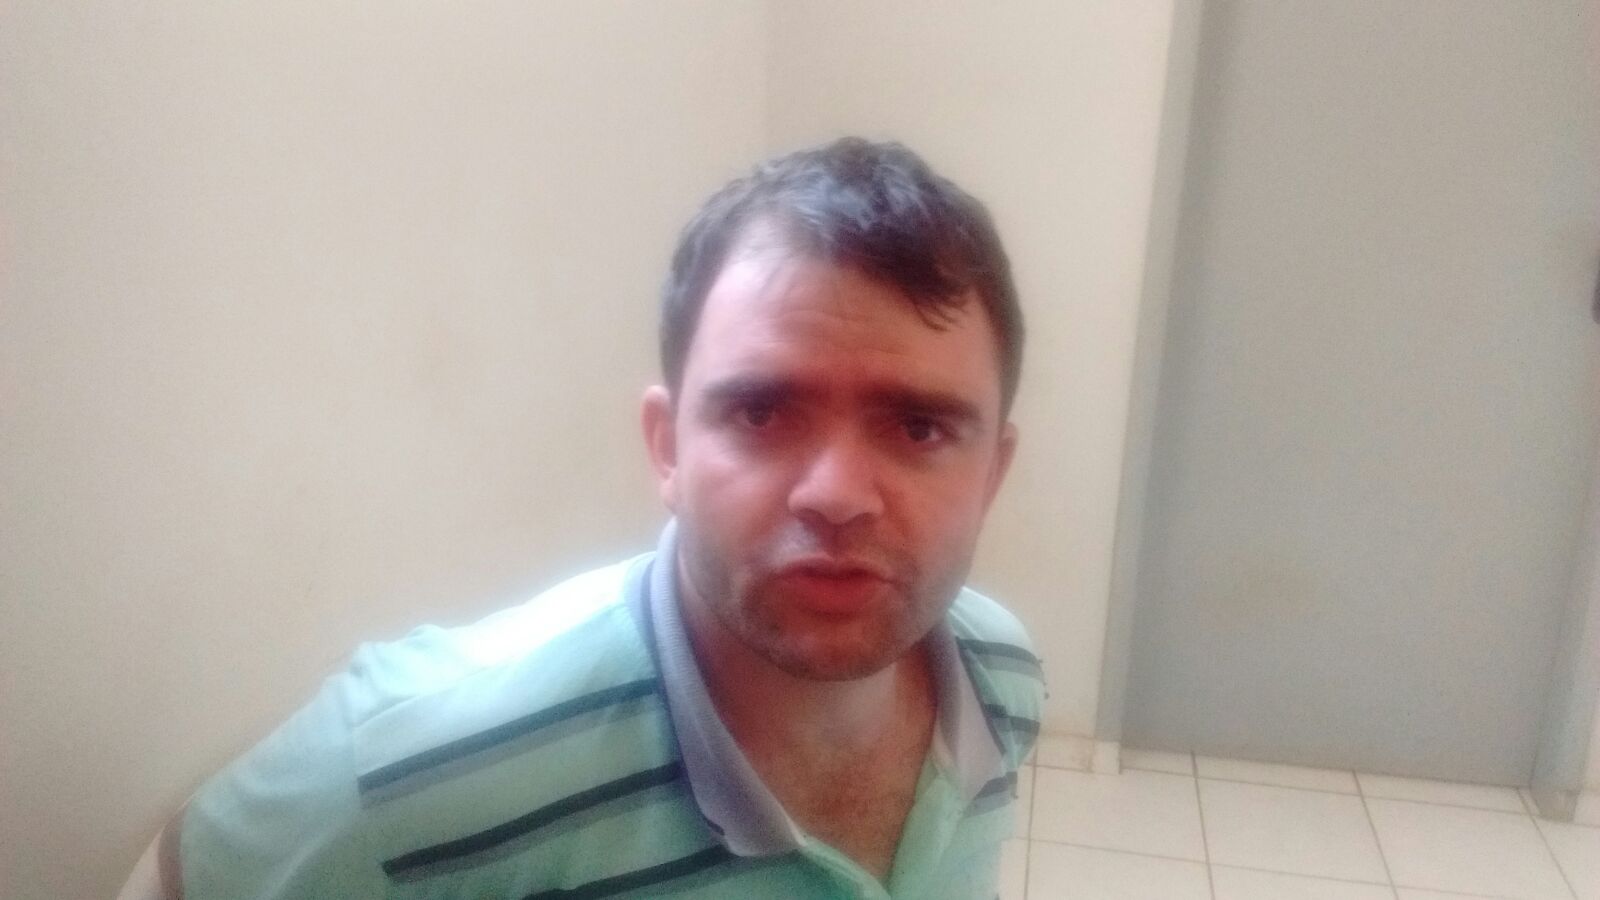 Acusado de roubar loja d’O Boticário em Caratinga é preso em Inhapim